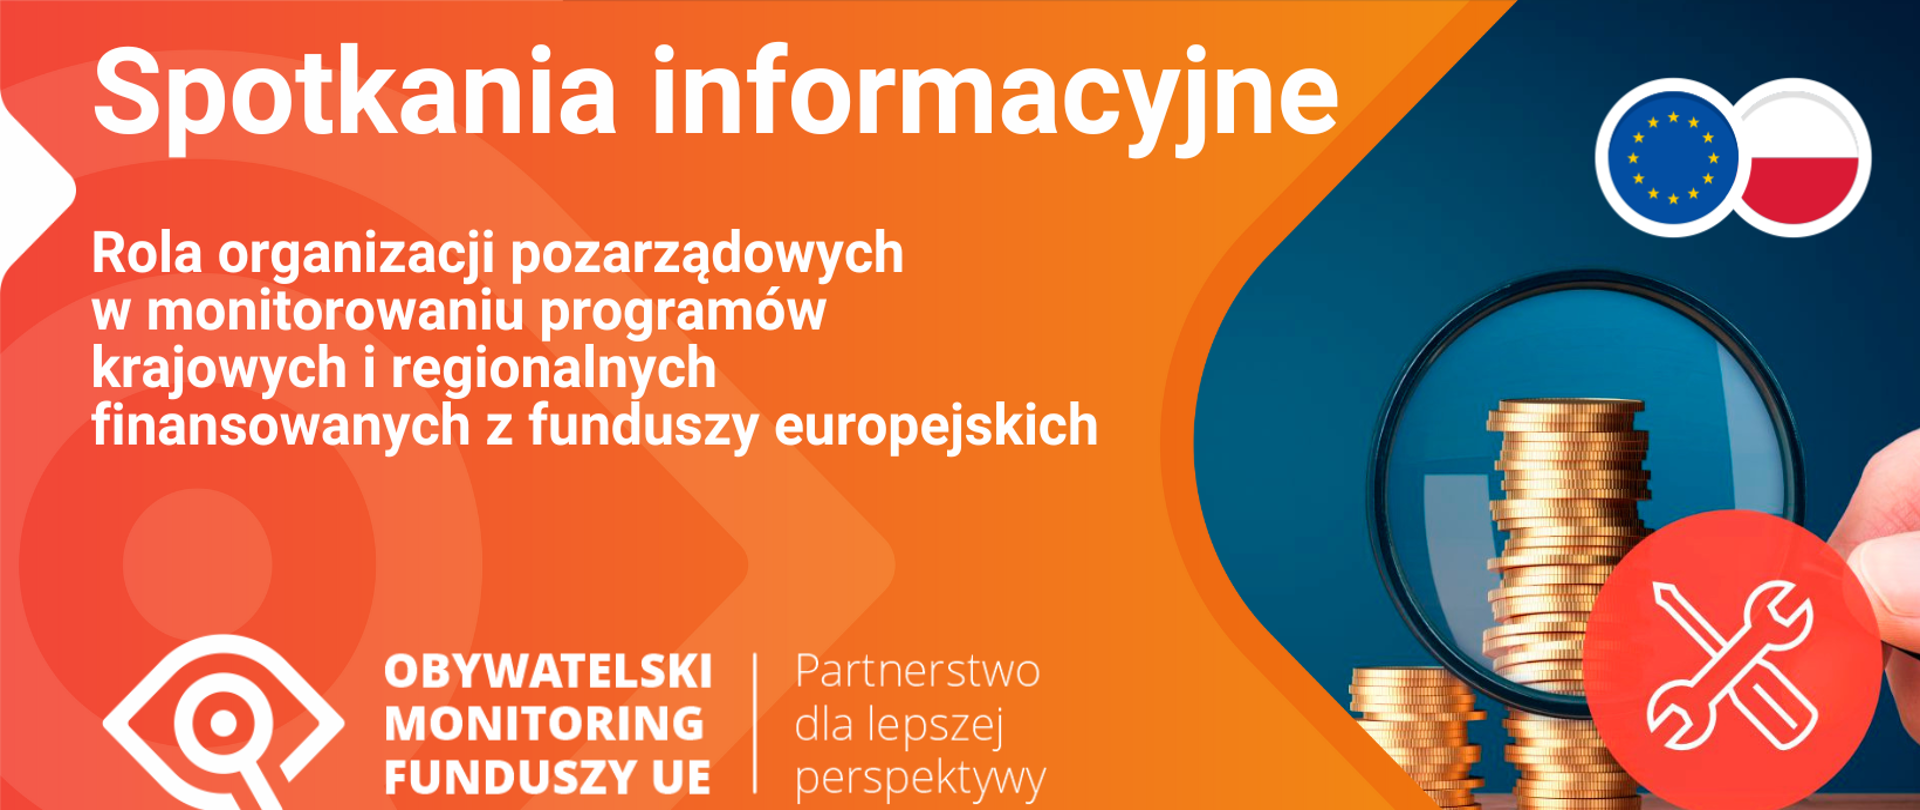 Rola organizacji pozarządowych w monitorowaniu programów krajowych i regionalnych finansowanych z funduszy europejskich - plakat w kolorze pomarańczowym 